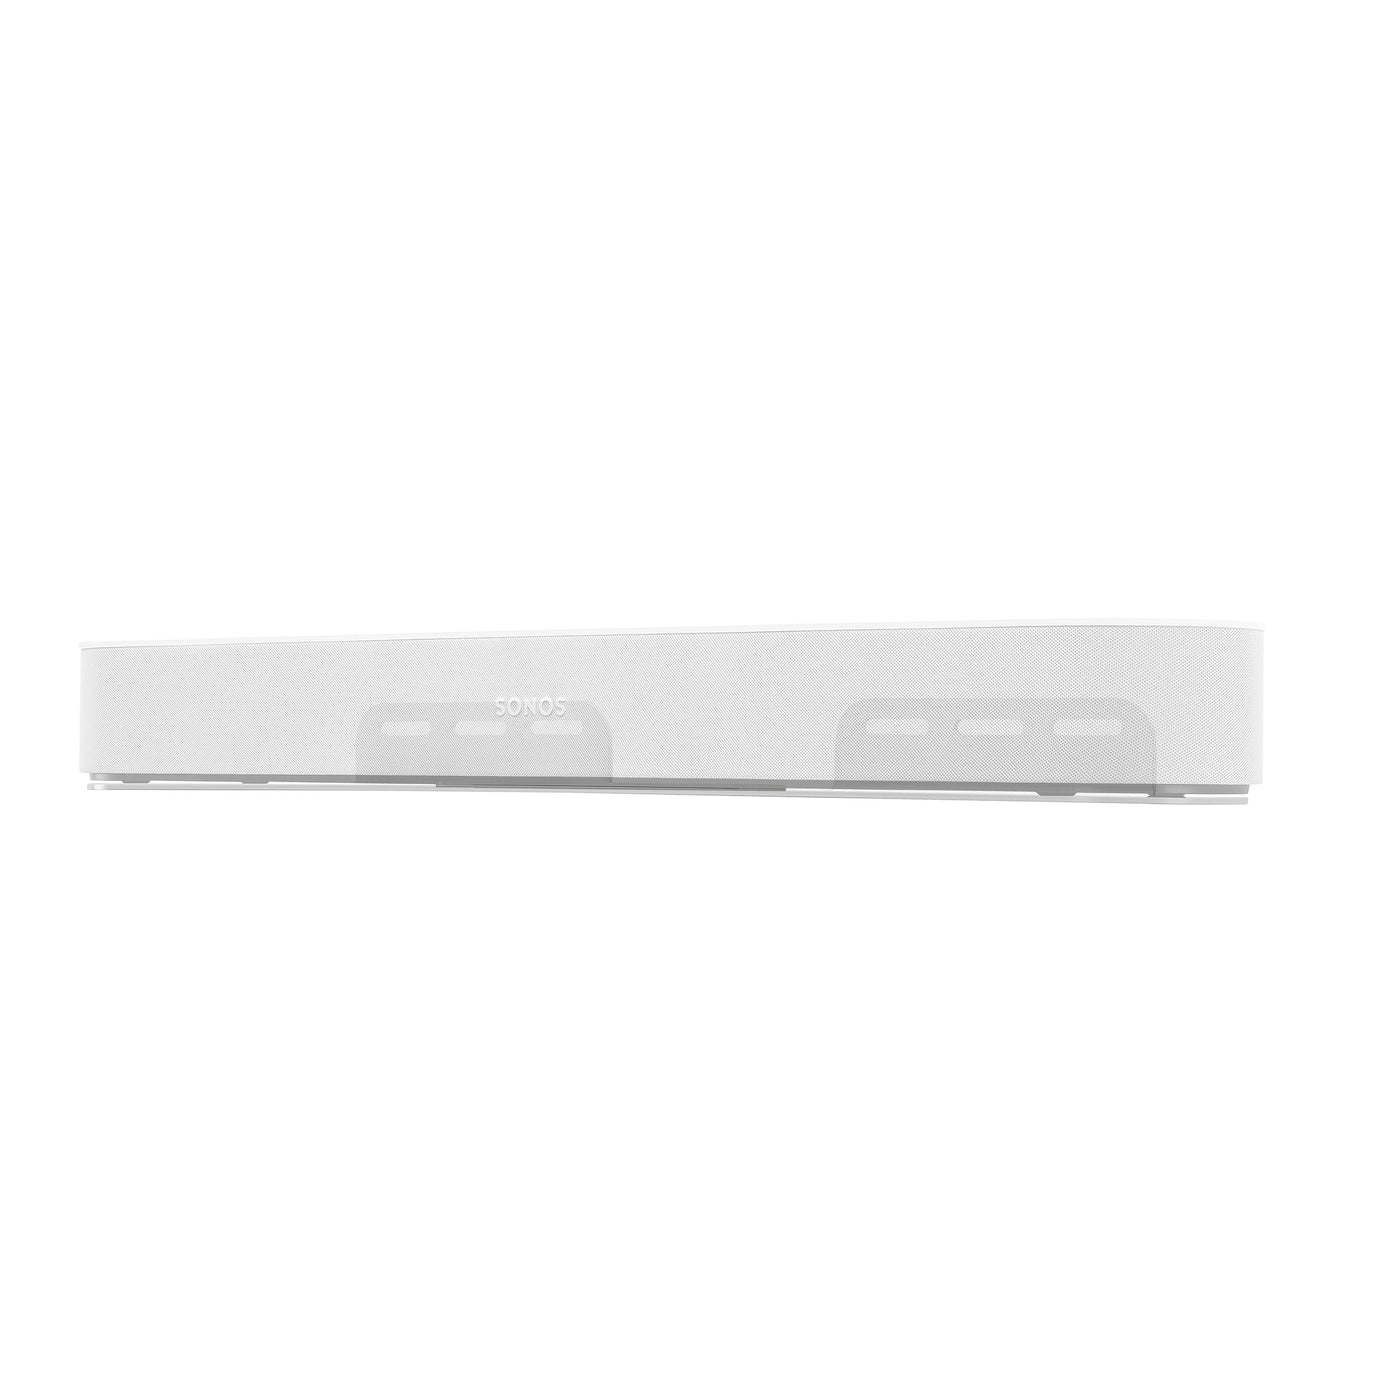 Flexson Wall Mount For Sonos Beam Speaker in White (FLXBFWM1011)